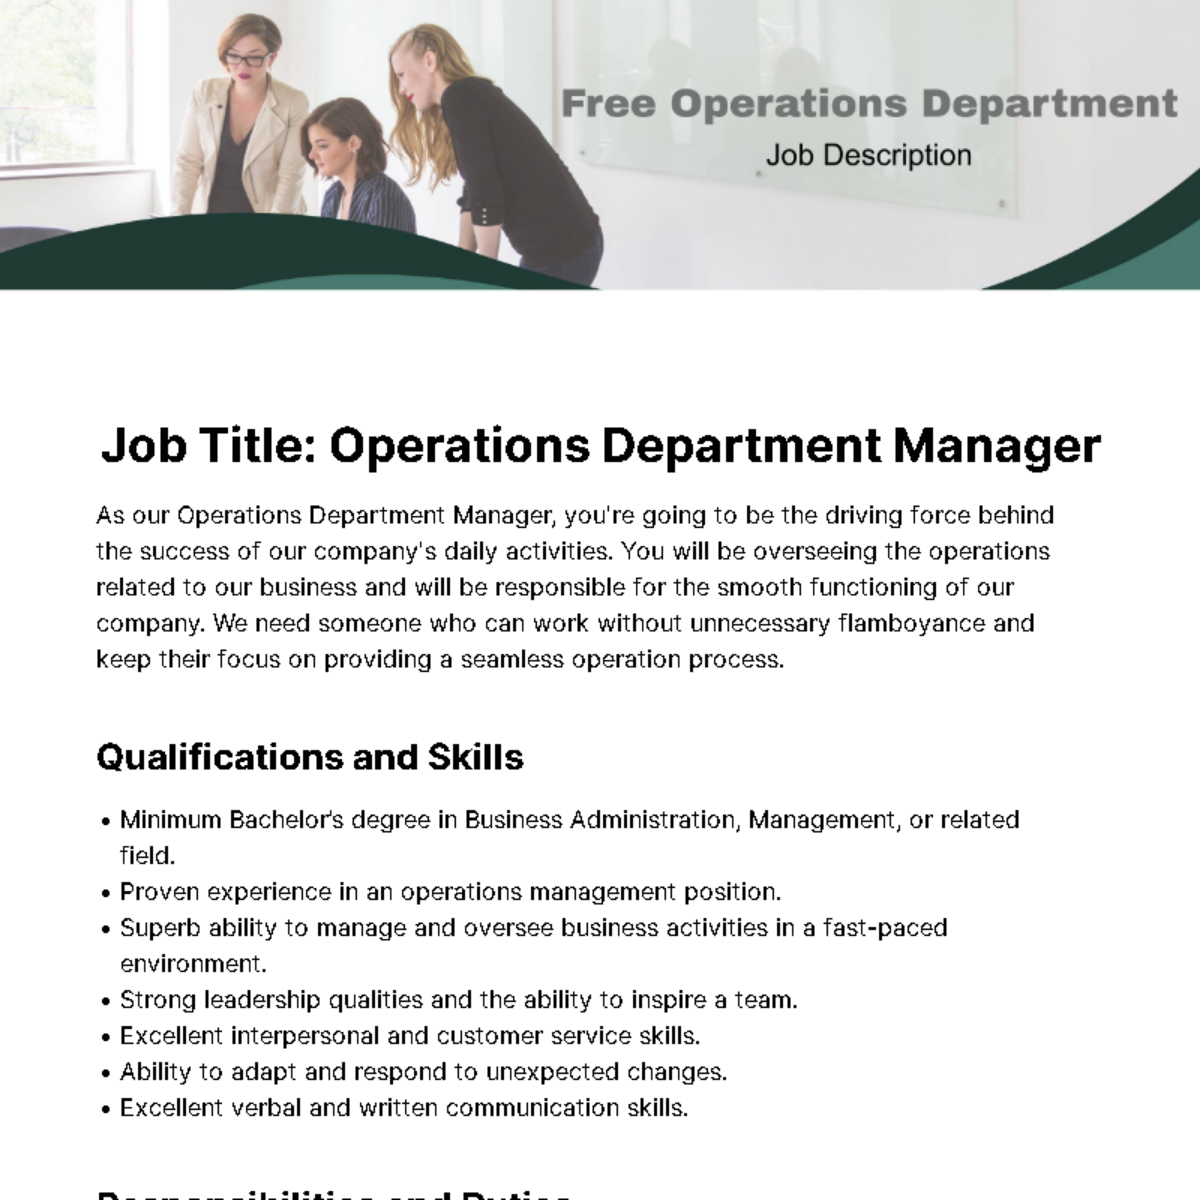 Operations Department Job Description Template